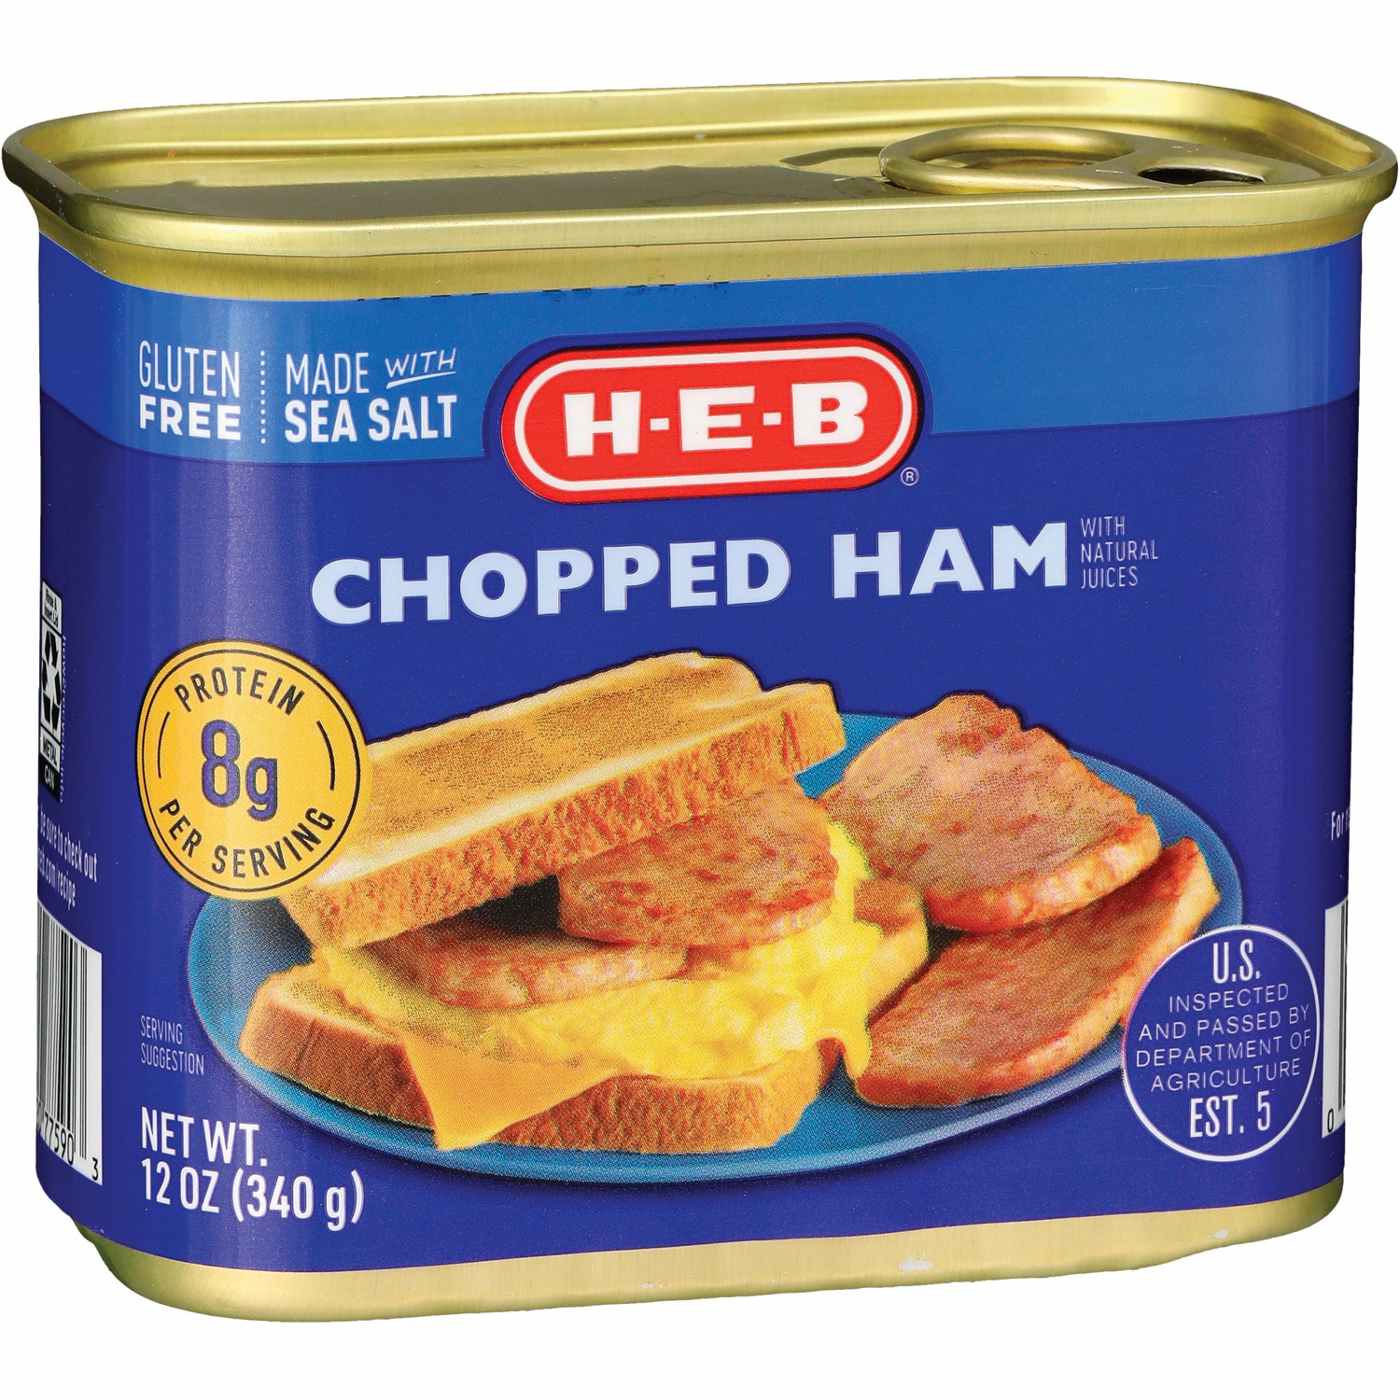 H-E-B Chopped Ham; image 2 of 2